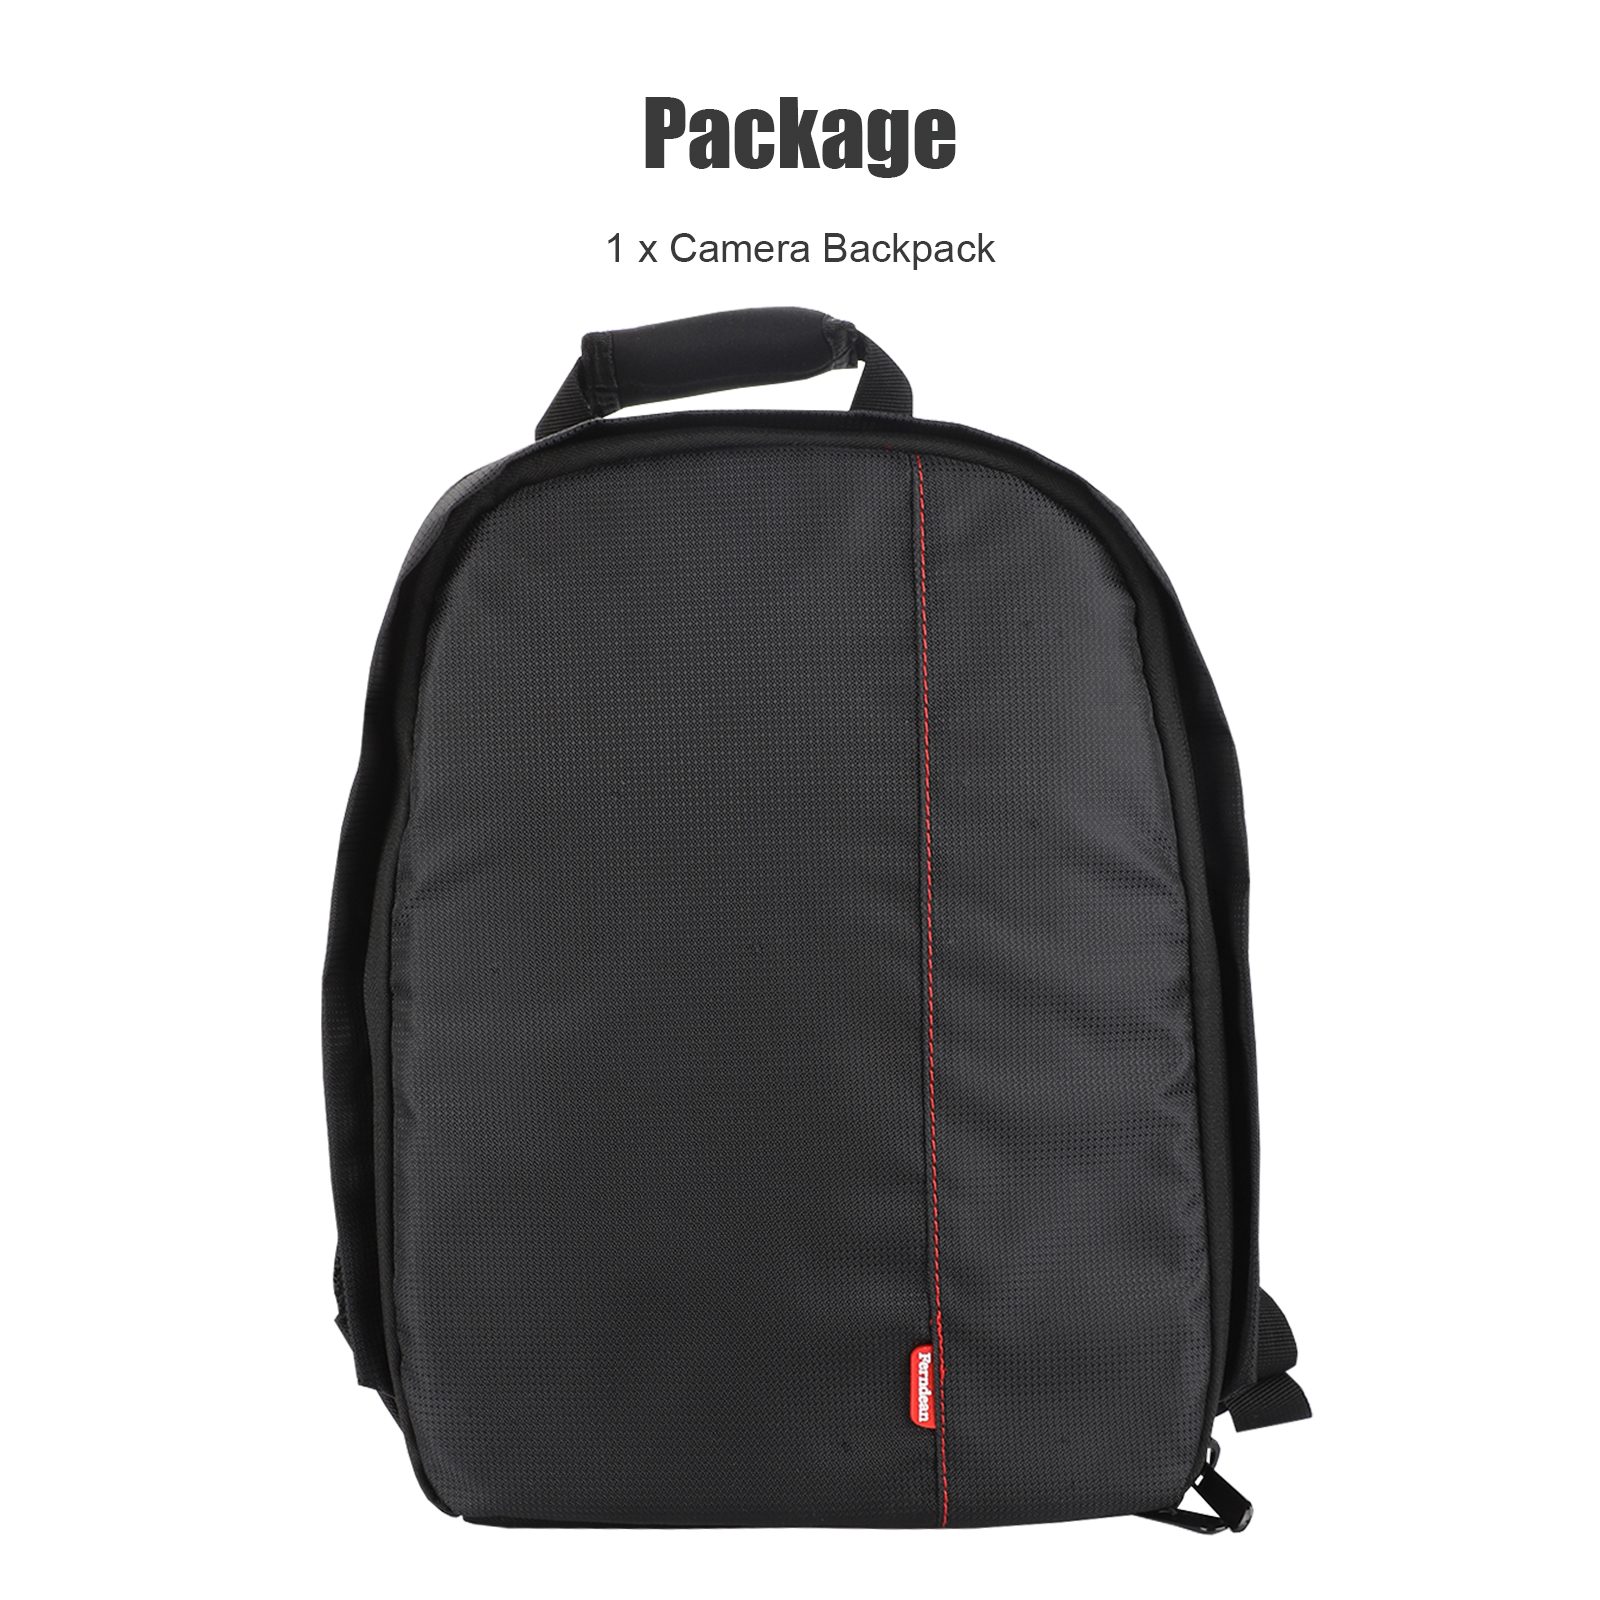 Mirrorless Camera Backpack – Waterproof & Spacious